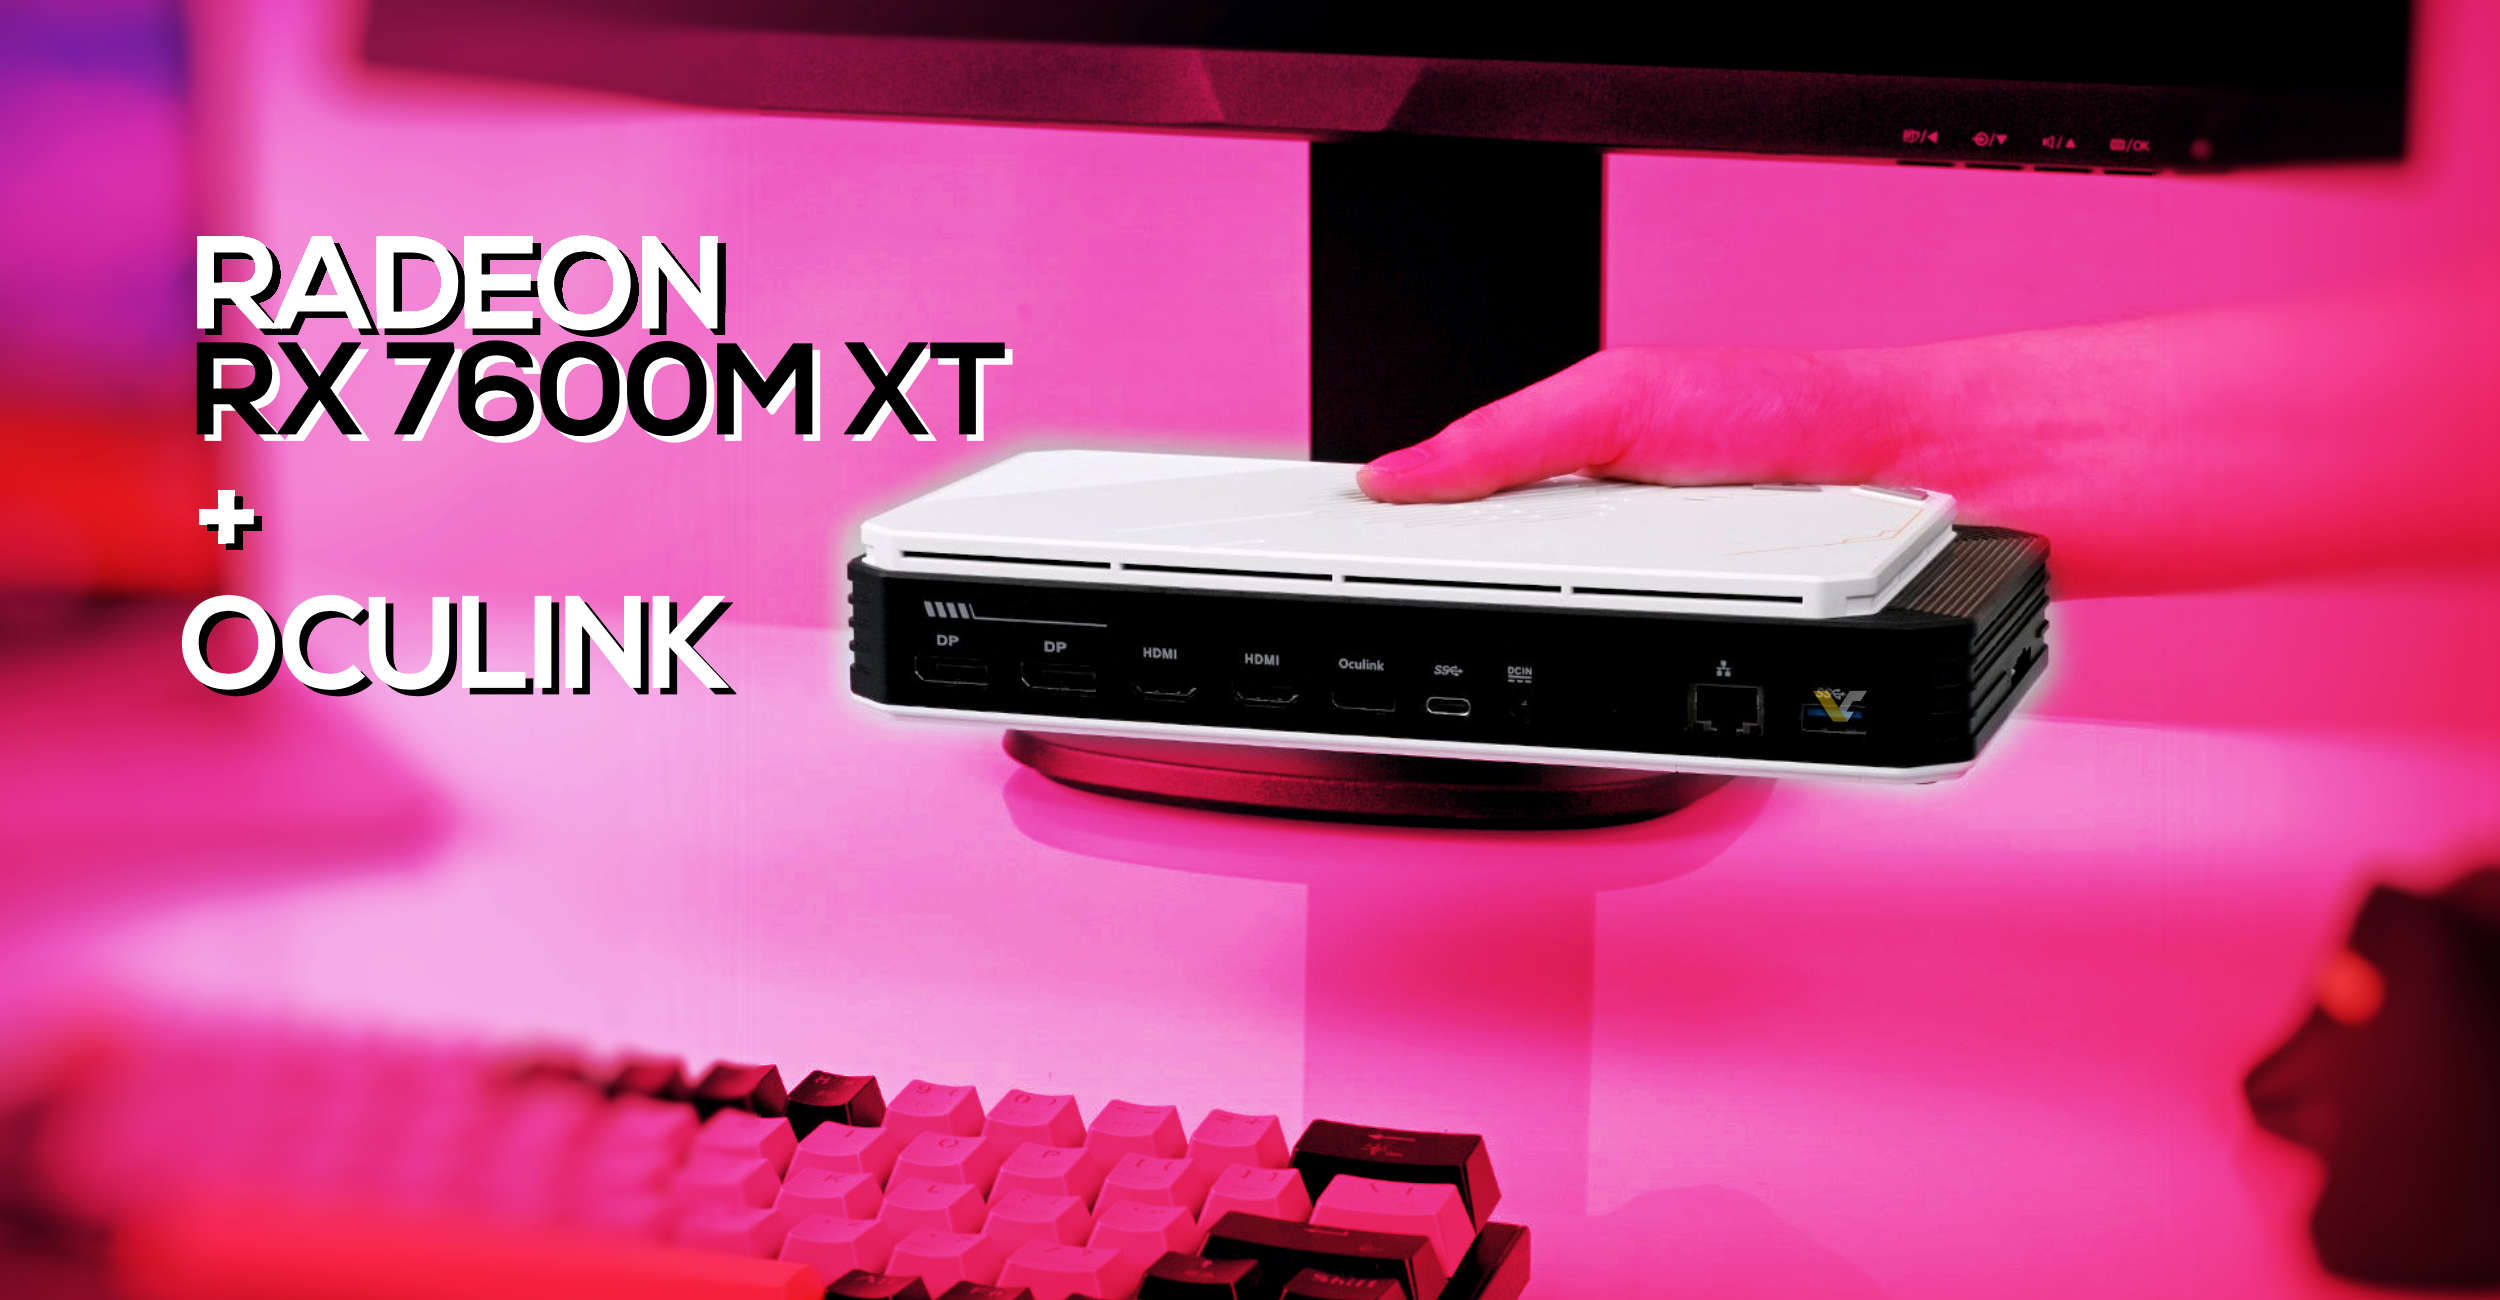 BoostR eGPU dengan Radeon RX 7600M XT dan konektor OCuLink akan diluncurkan dengan harga $499